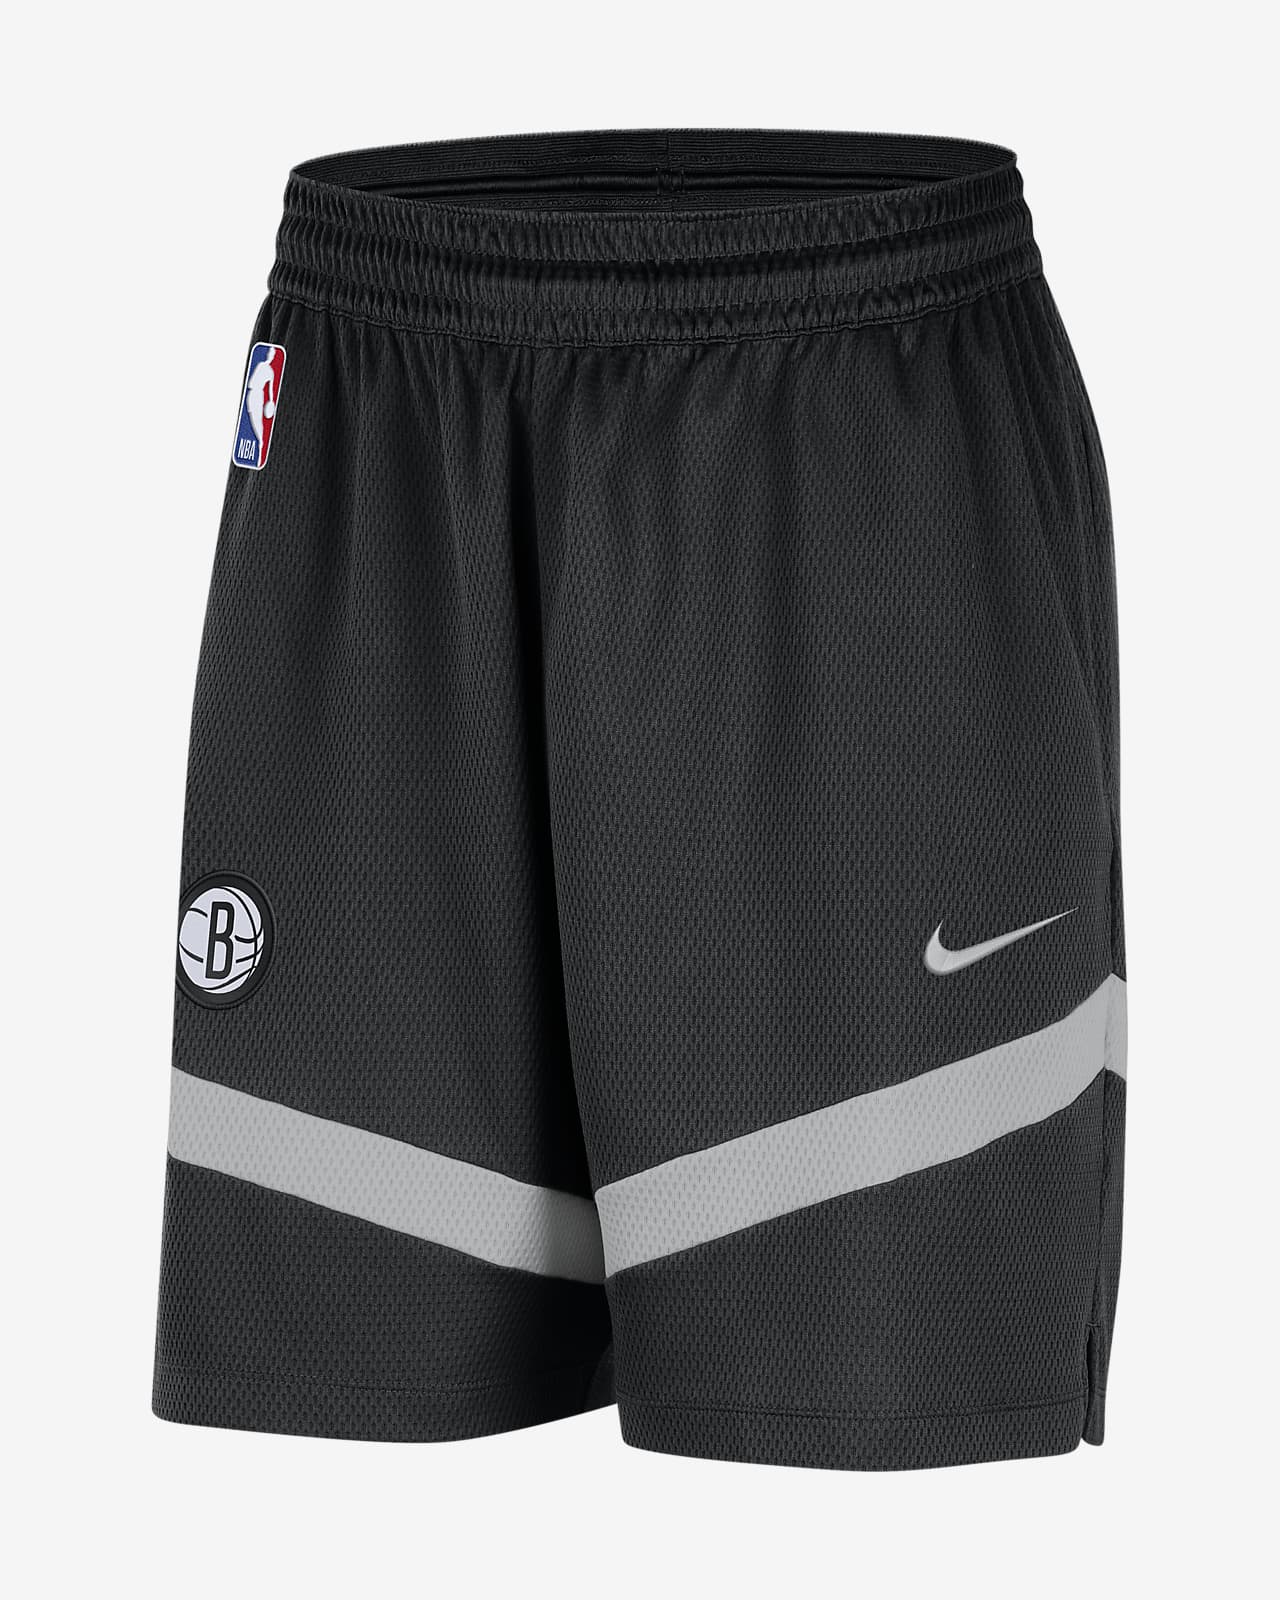 Ανδρικό σορτς Nike Dri-FIT NBA Μπρούκλιν Νετς Icon Practice 20 cm